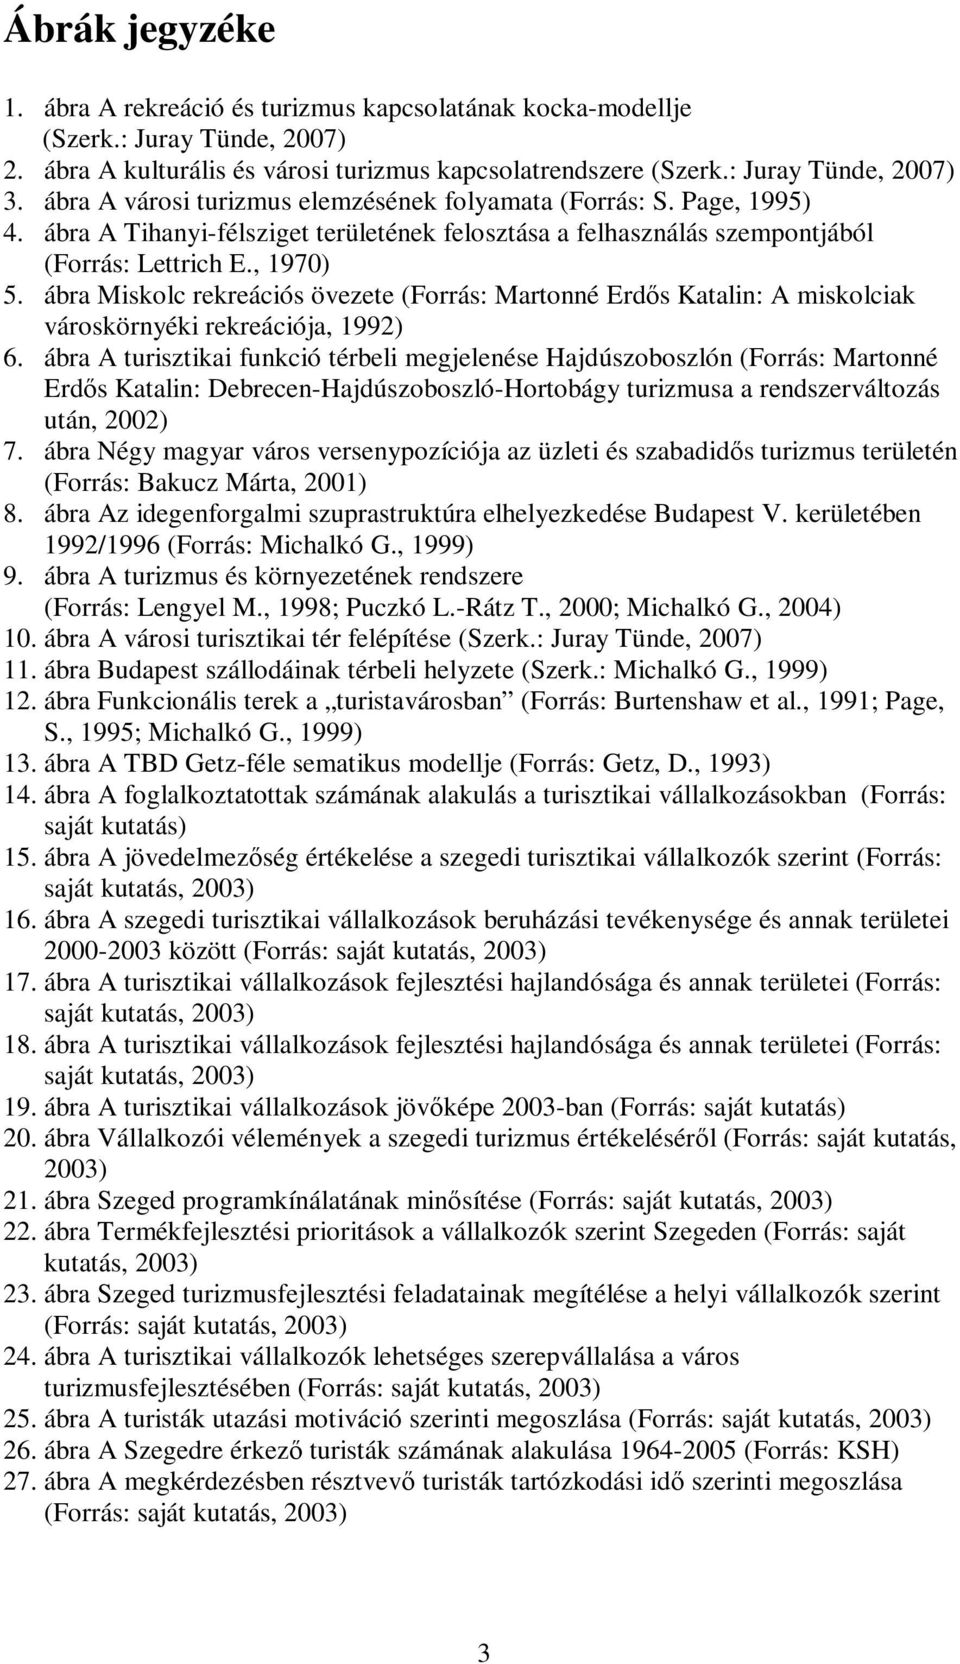 ábra Miskolc rekreációs övezete (Forrás: Martonné Erdős Katalin: A miskolciak városkörnyéki rekreációja, 1992) 6.